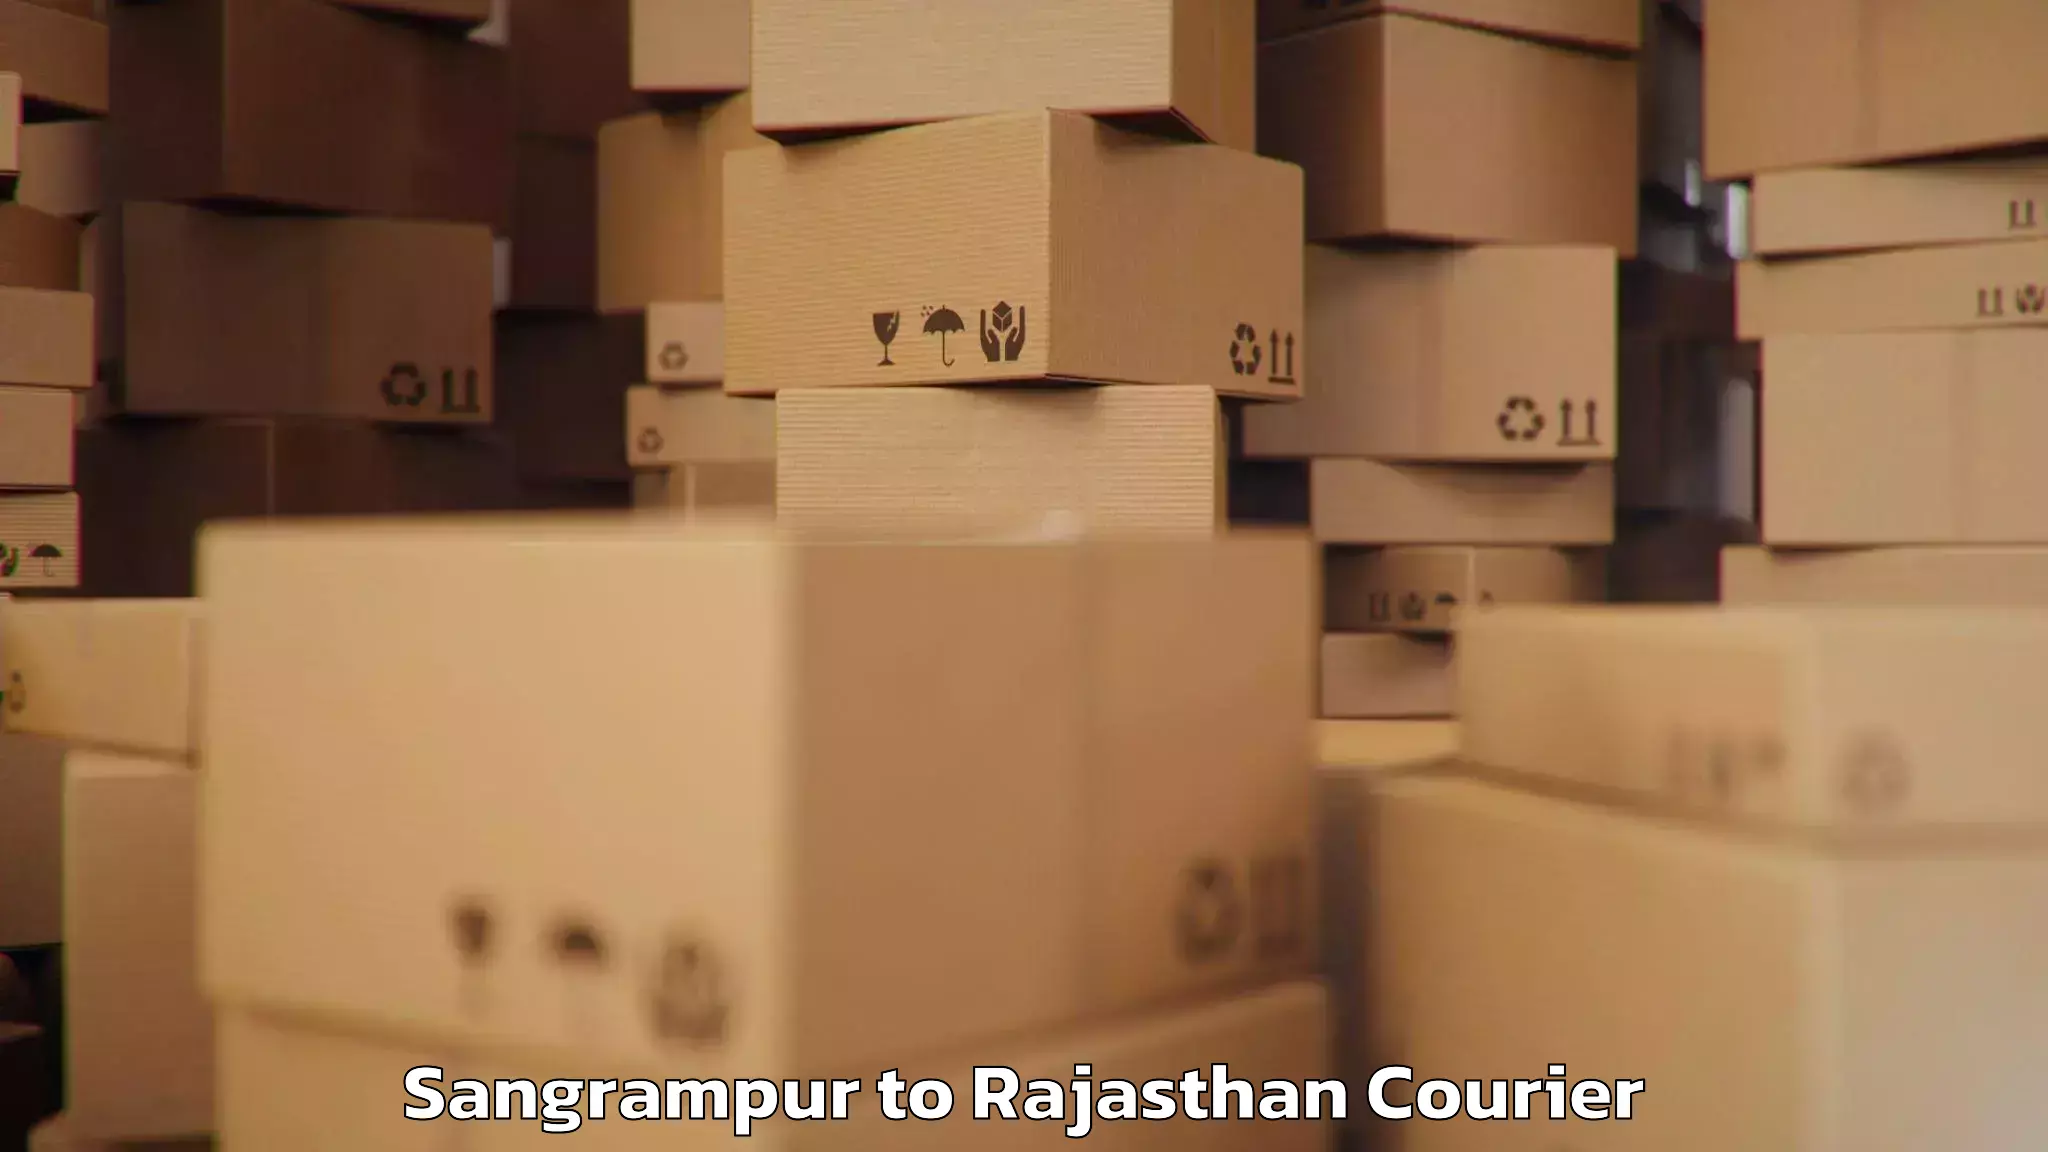 Baggage shipping rates calculator Sangrampur to Chhoti Sadri